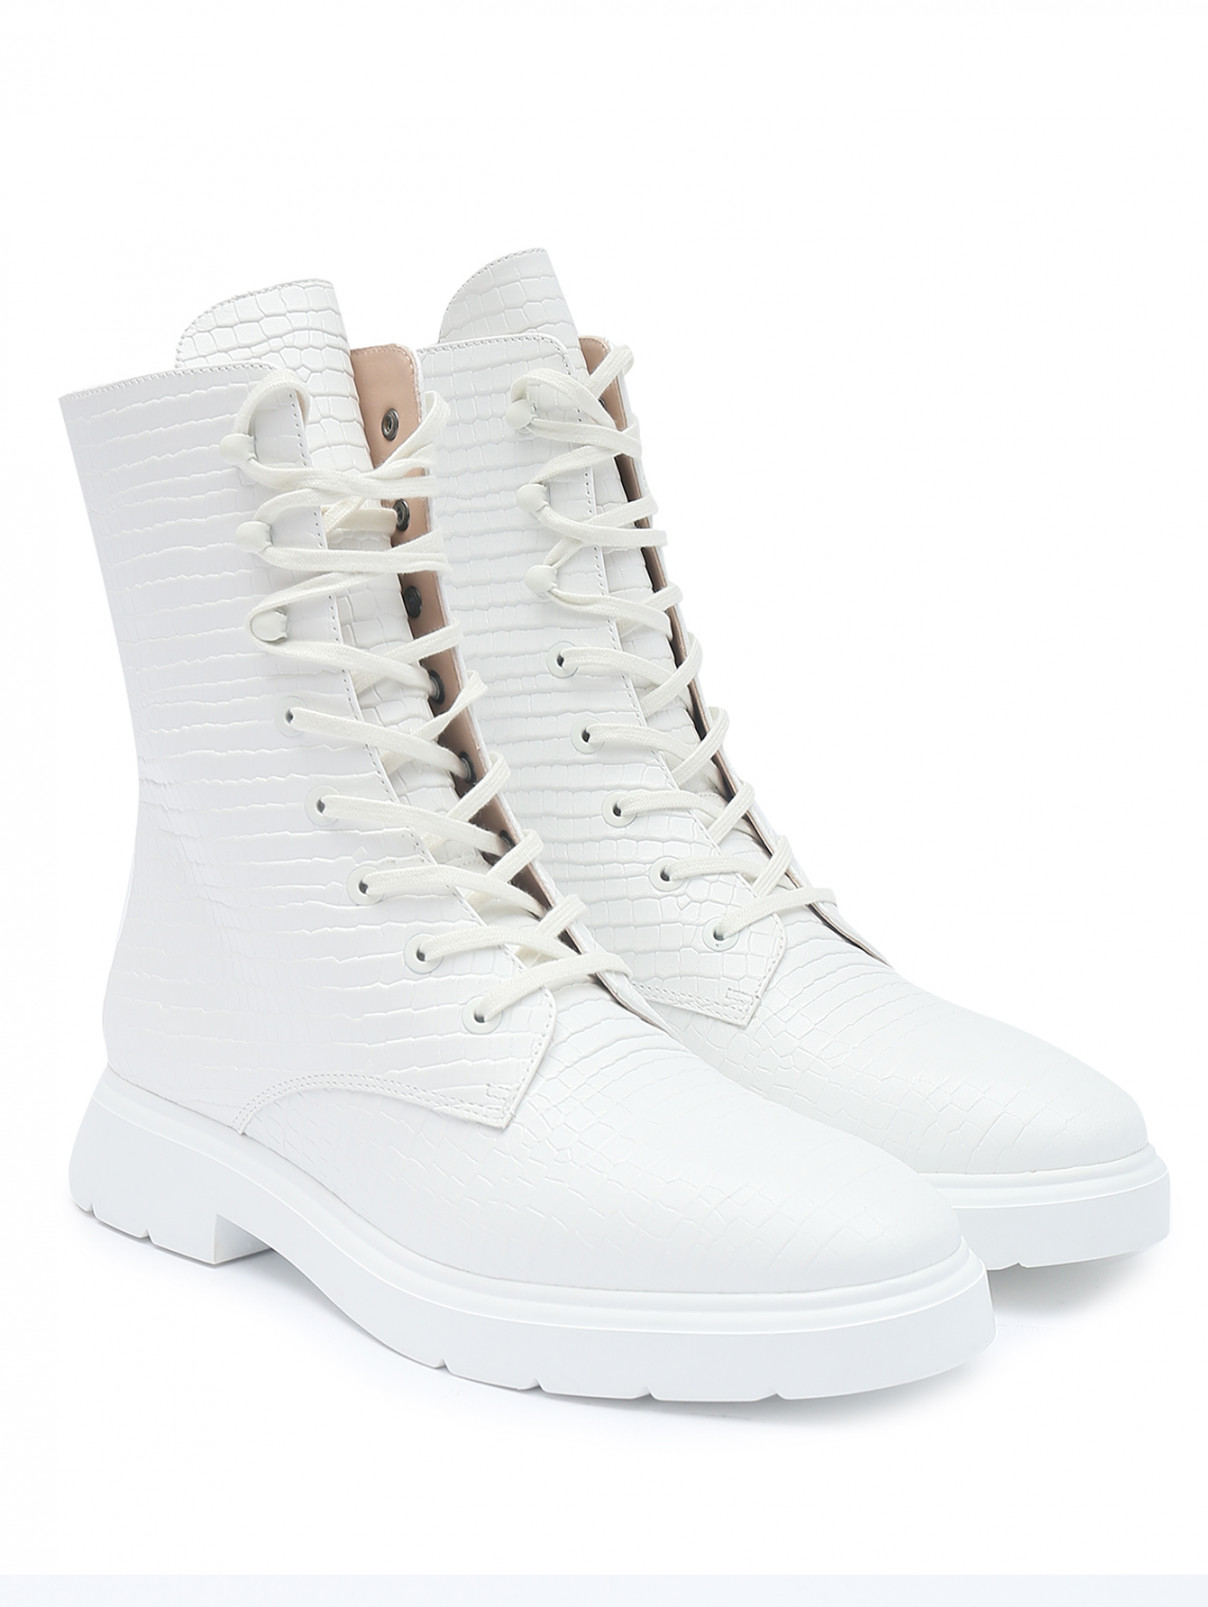 Ботинки из факутрной кожи на шнурках Stuart Weitzman  –  Общий вид  – Цвет:  Белый